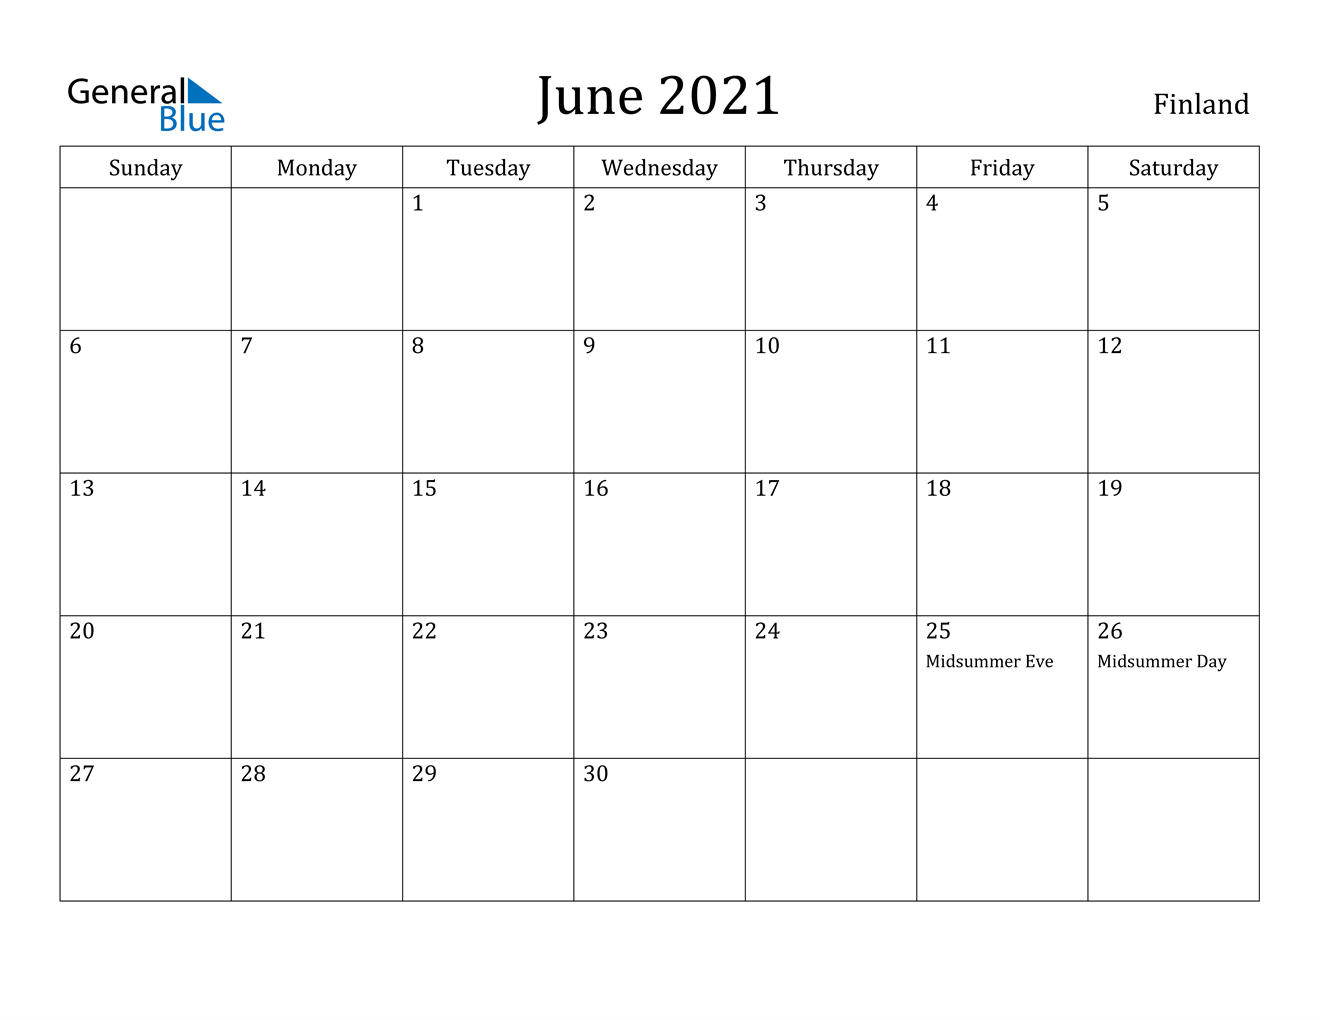 June 2021 Calendar - Finland